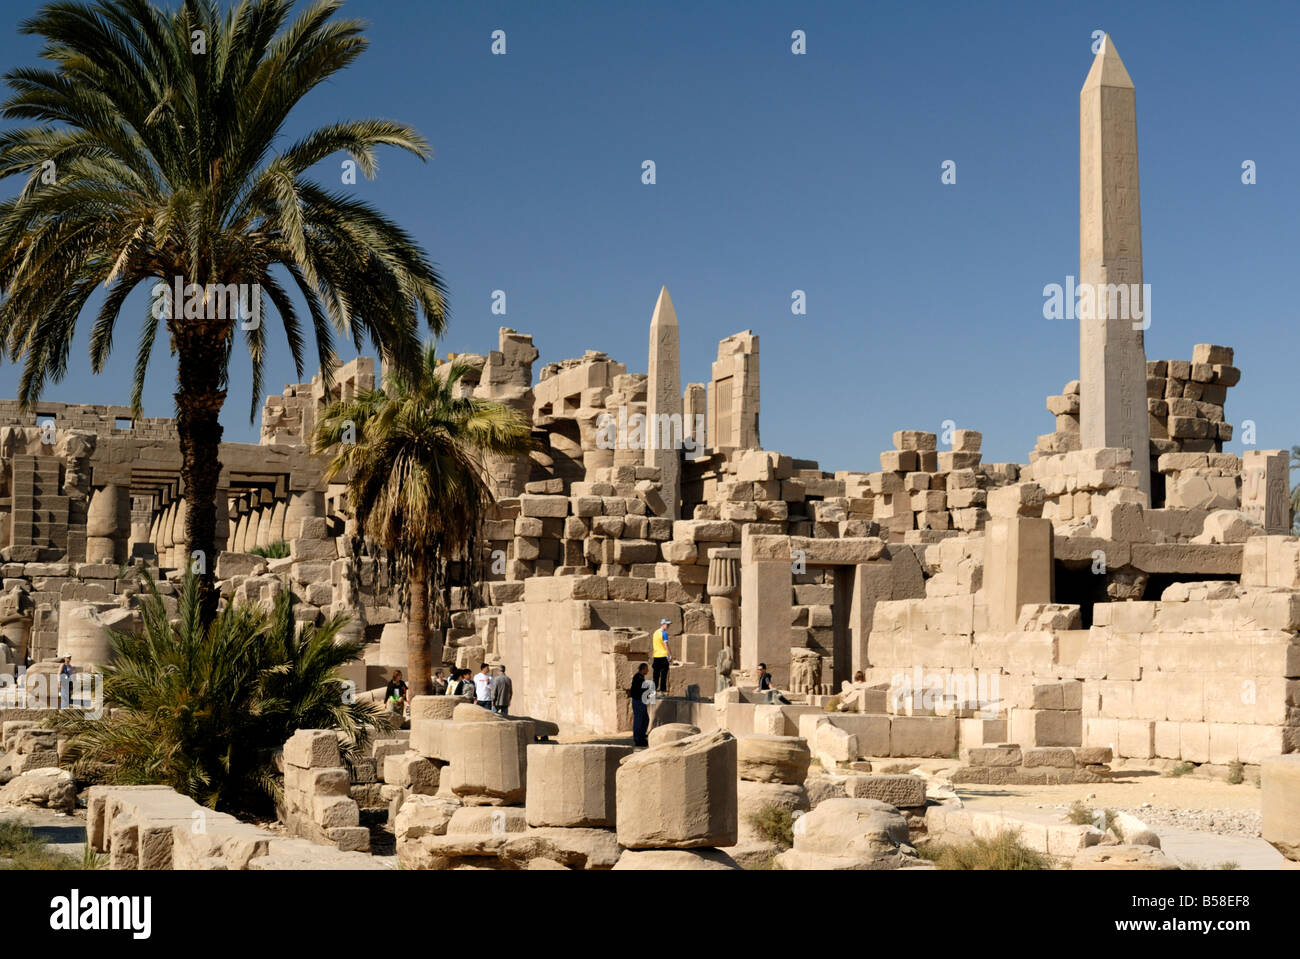 Les obélisques, Temple de Karnak, près de Louxor, Thèbes, Site du patrimoine mondial de l'UNESCO, l'Égypte, l'Afrique du Nord, Afrique Banque D'Images